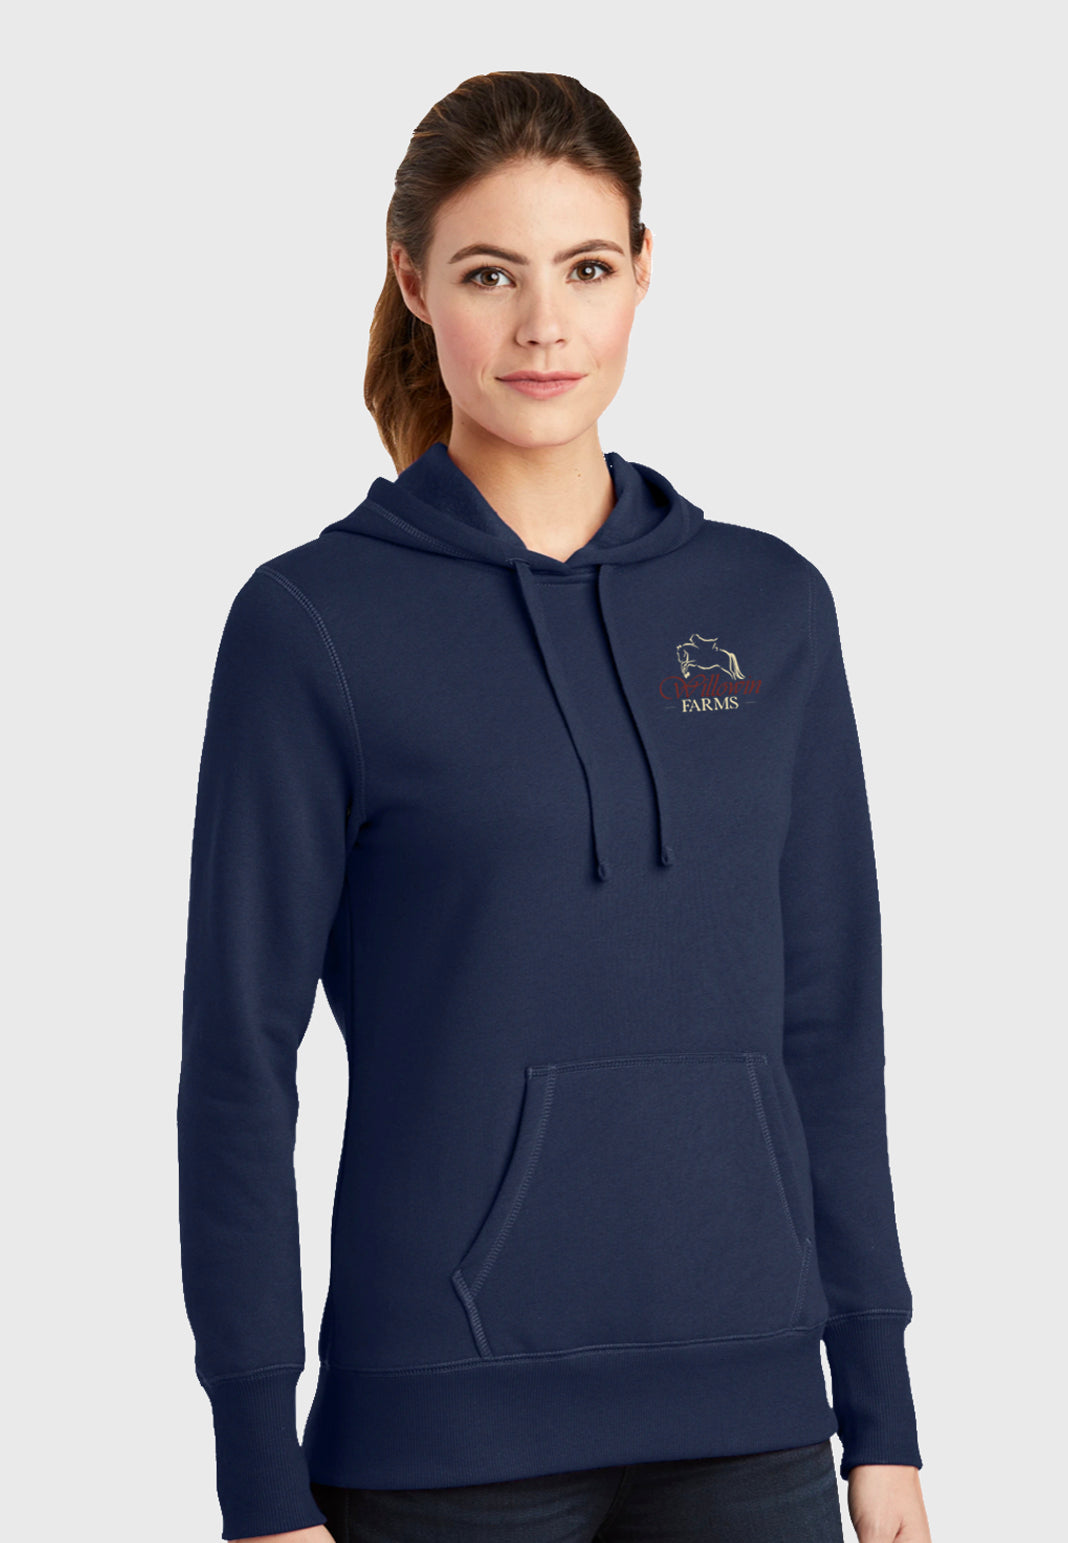 Willowin Farms Sport-Tek® Ladies Pullover Hooded Sweatshirt - Navy